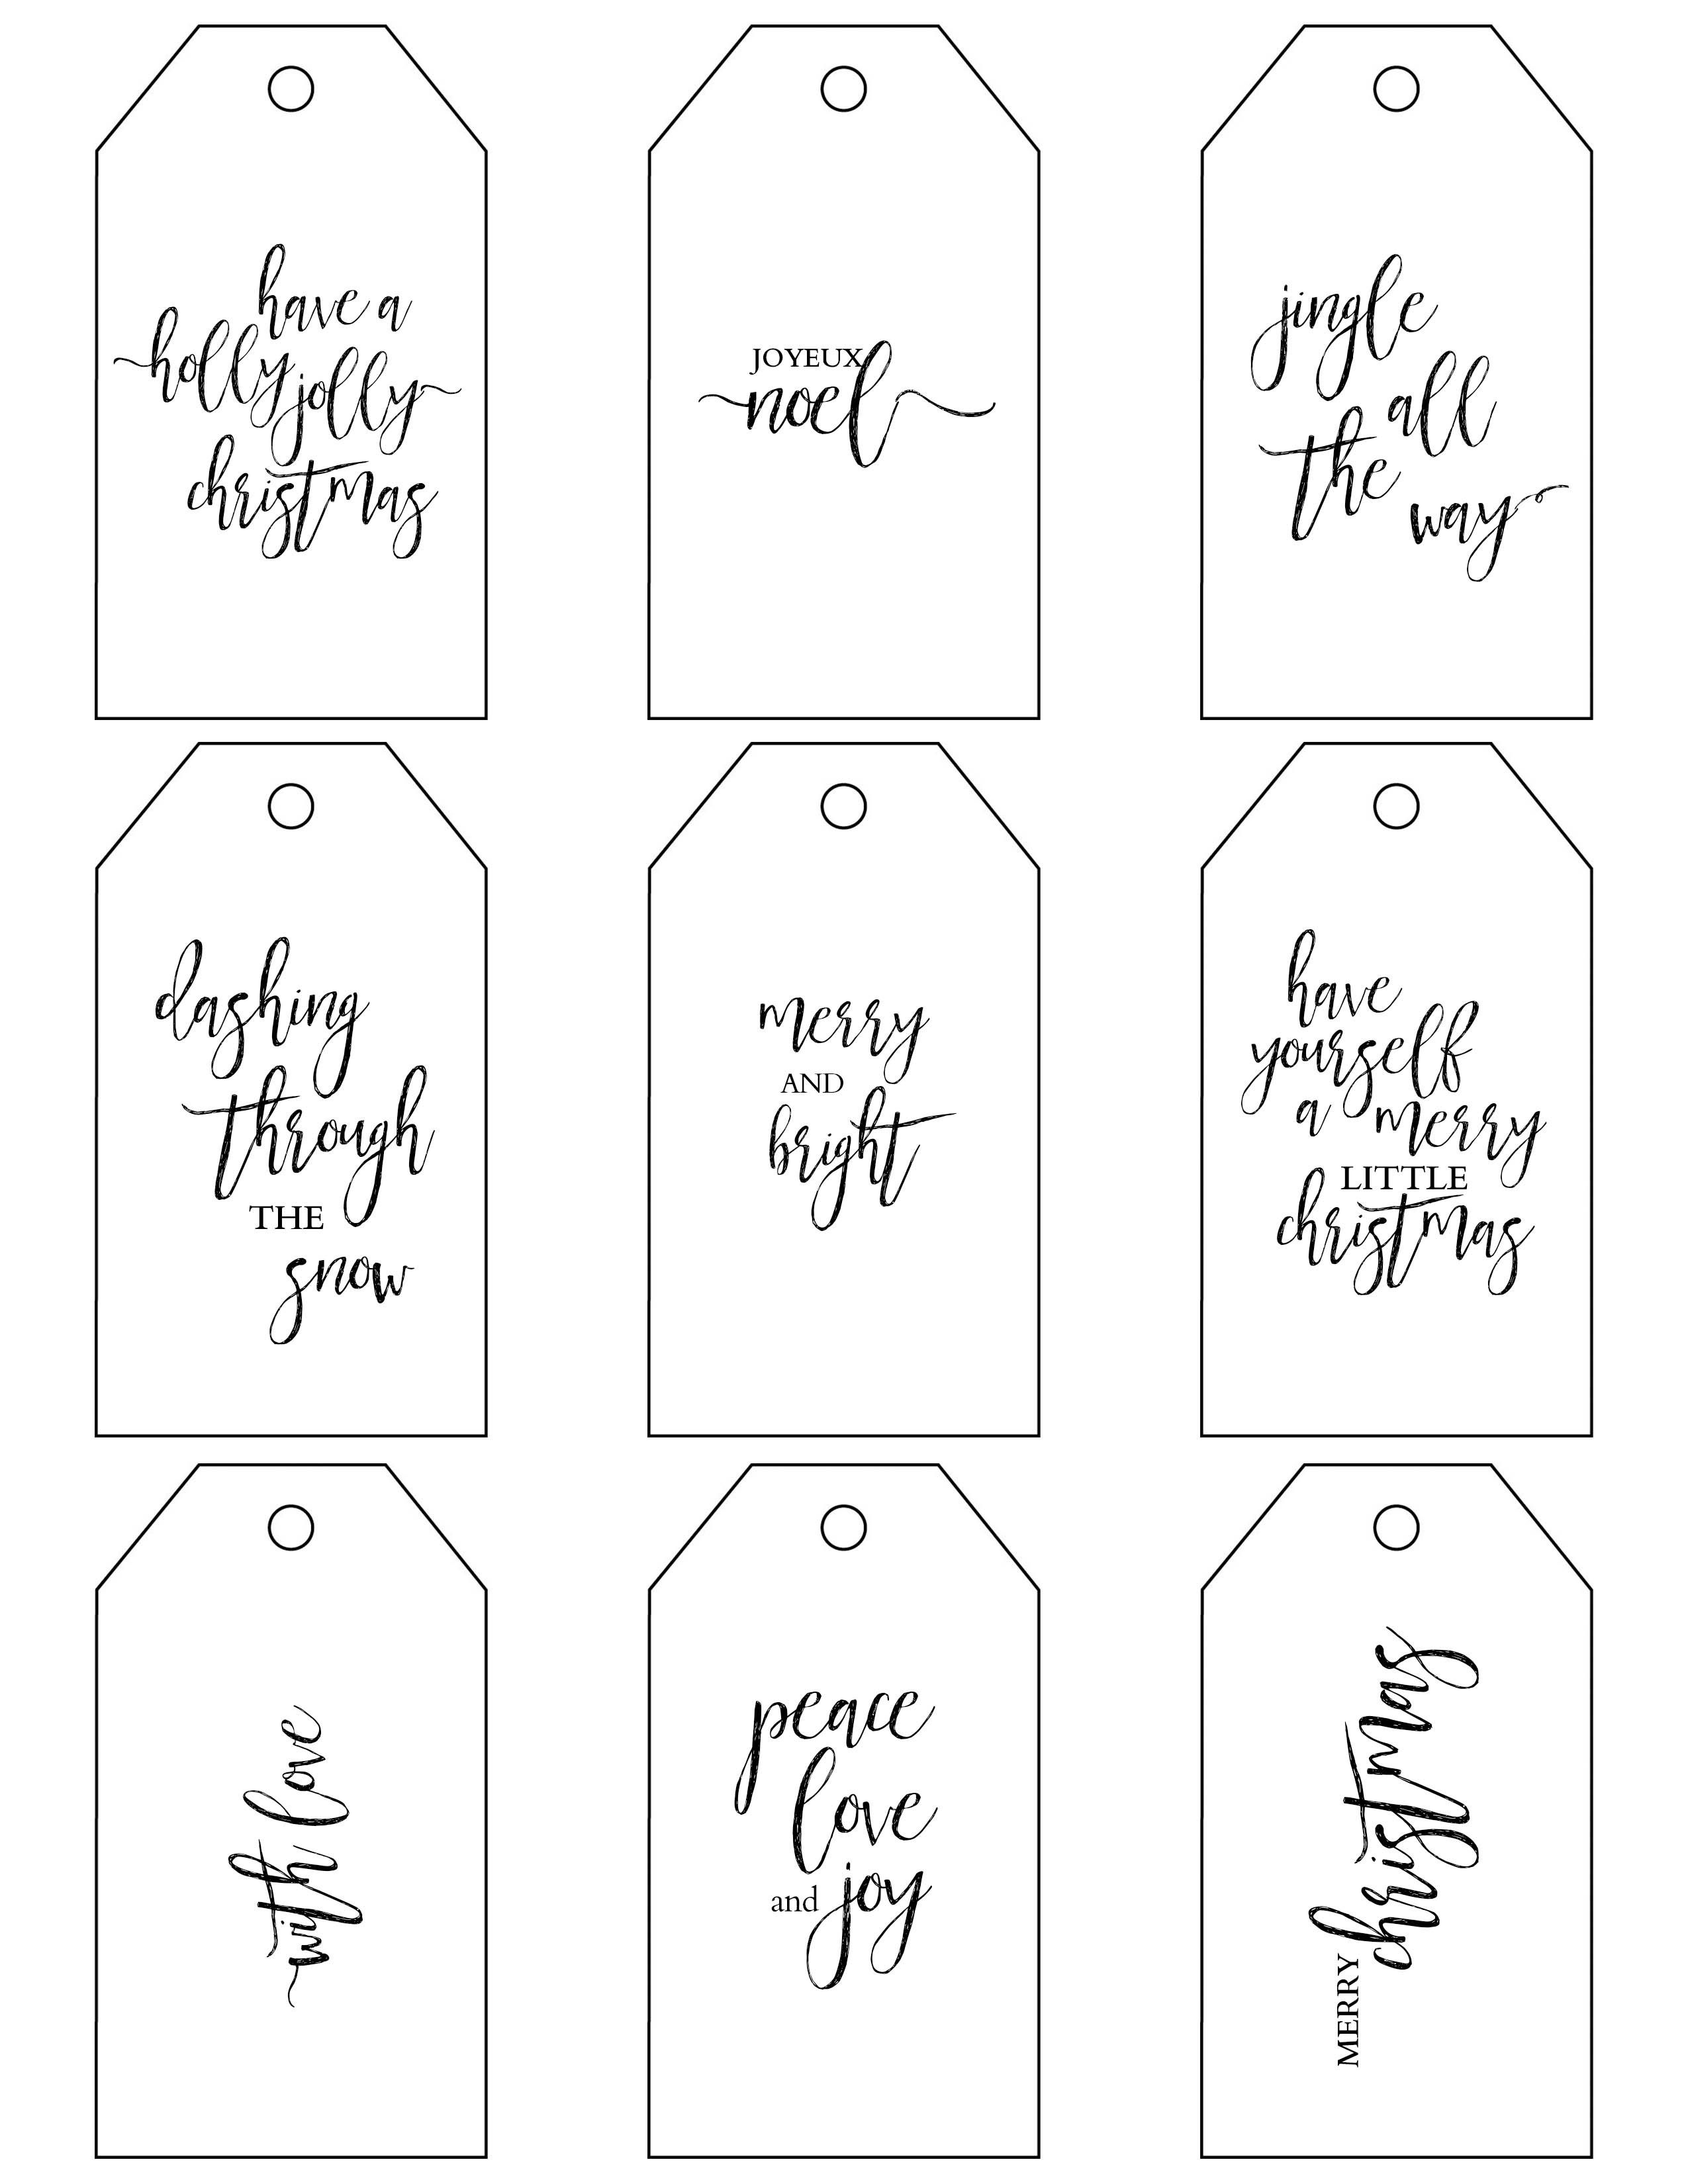 Printable Christmas Gift Tags Make Holiday Wrapping Simple - Free Printable Christmas Gift Tags